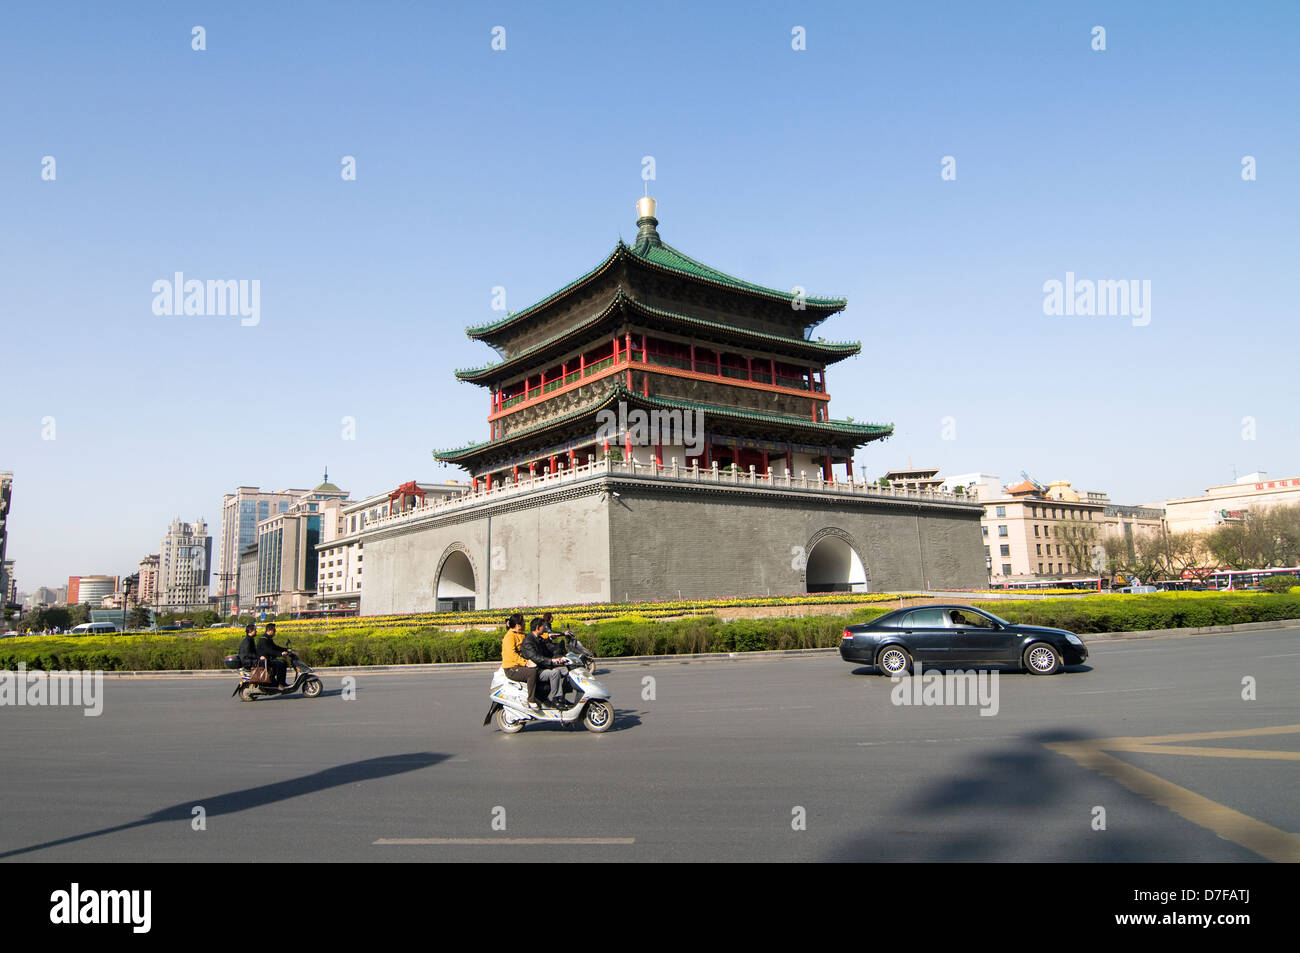 Bell Tower, datant du 14ème siècle reconstruite par la dynastie Qing en 1739, la ville de Xian, Shaanxi. Banque D'Images